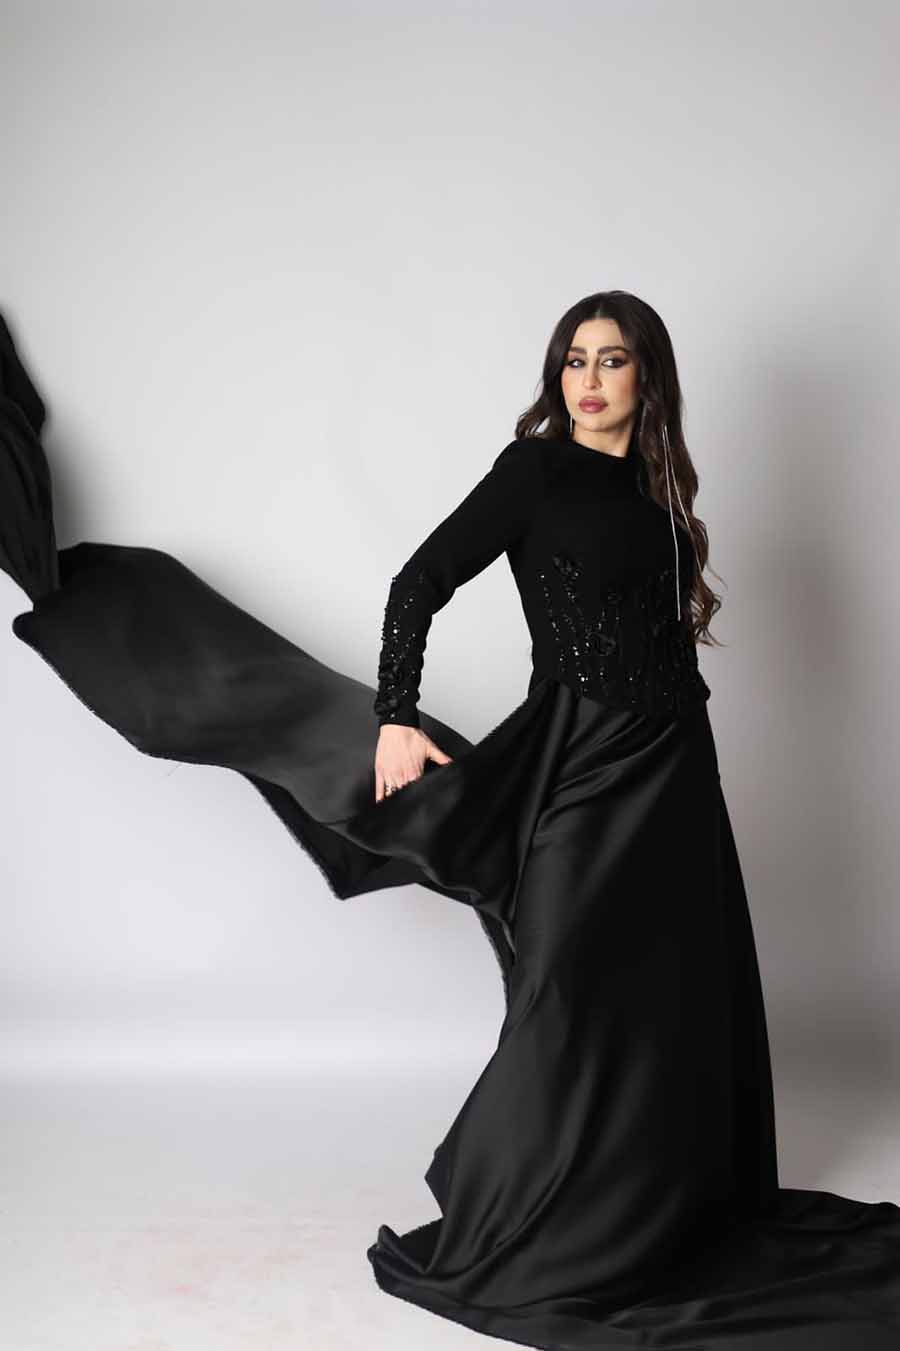 ميسم أبو سعيد تتألق بالتصاميم الكلاسيكية السوداء التي تعطي المرأة رونقاً مميزاً!